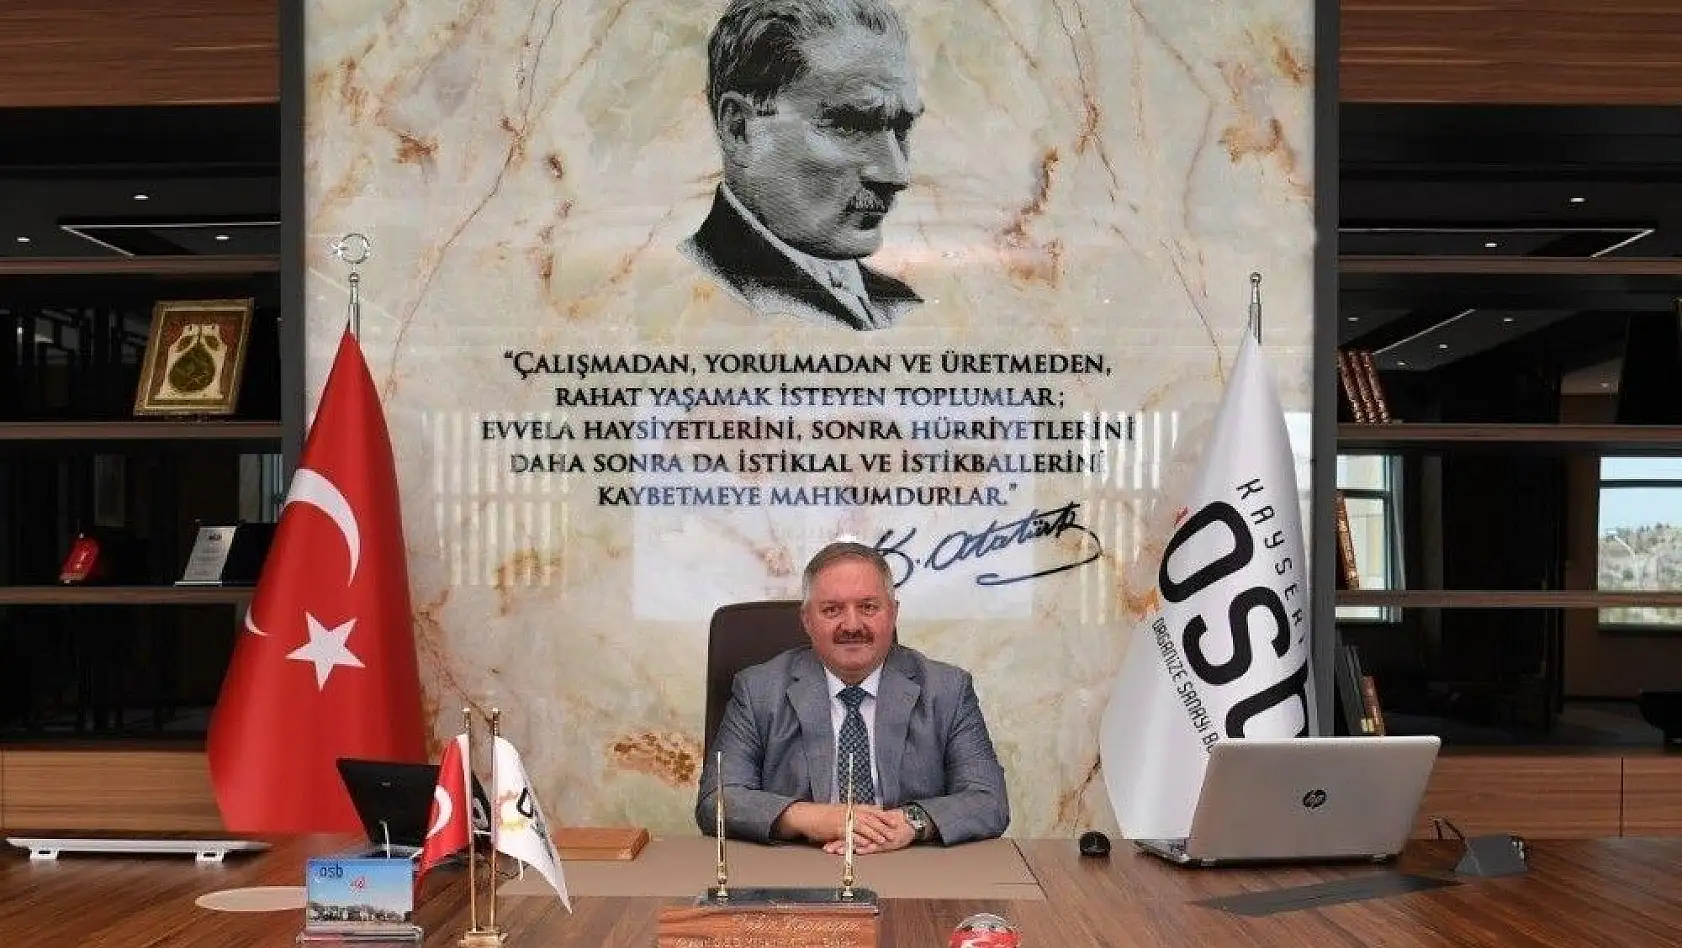 Kayseri OSB Yönetim Kurulu Başkanı Tahir Nursaçan'dan 31 Mart Seçimleri Değerlendirmesi
